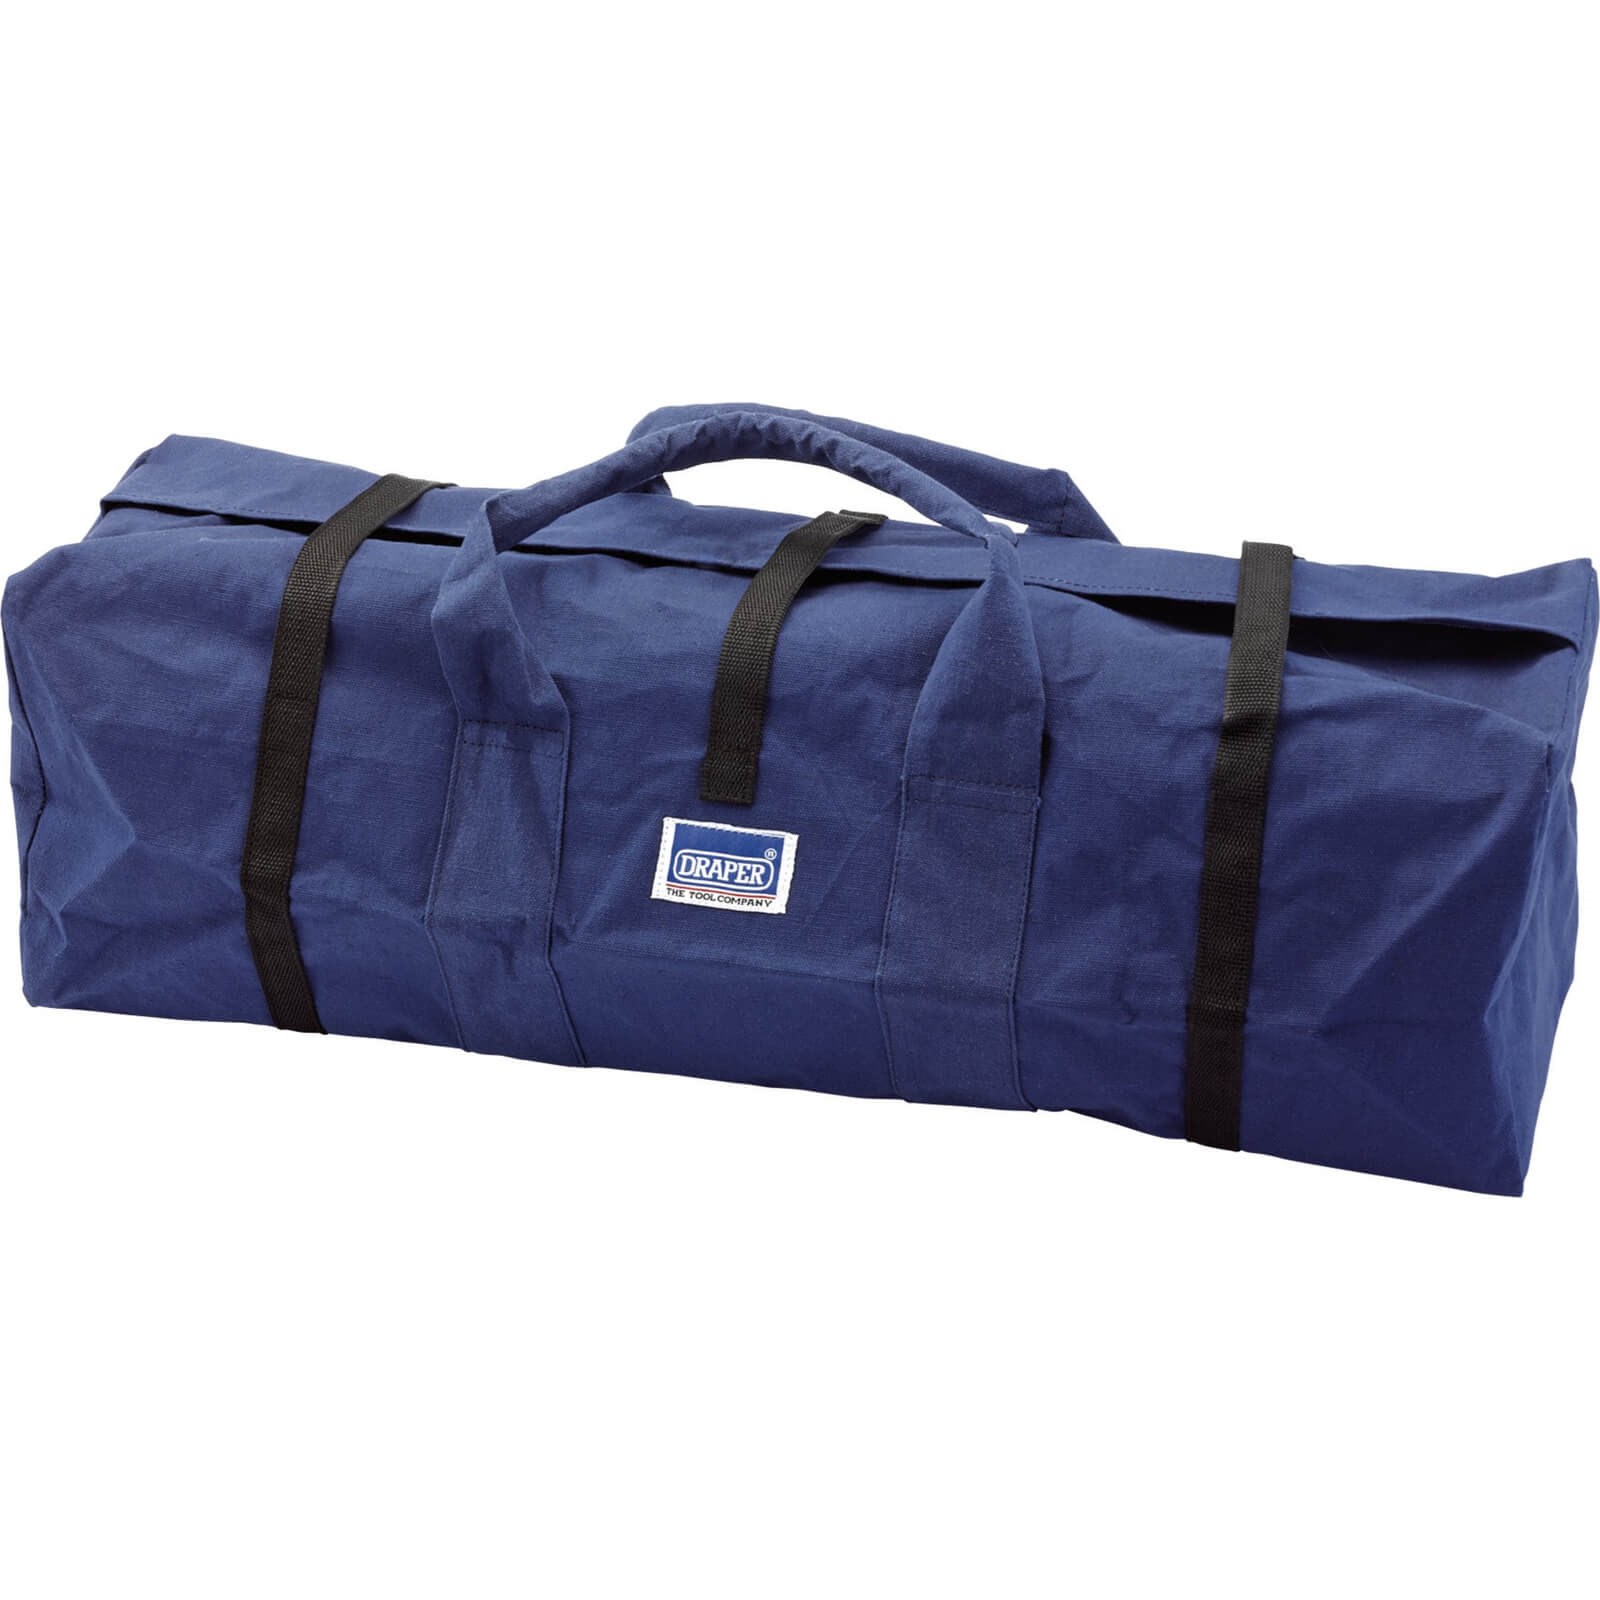 Draper 1x 740x190x220mm Canvas 34l Tool Bag Garage Professional Standard Tool